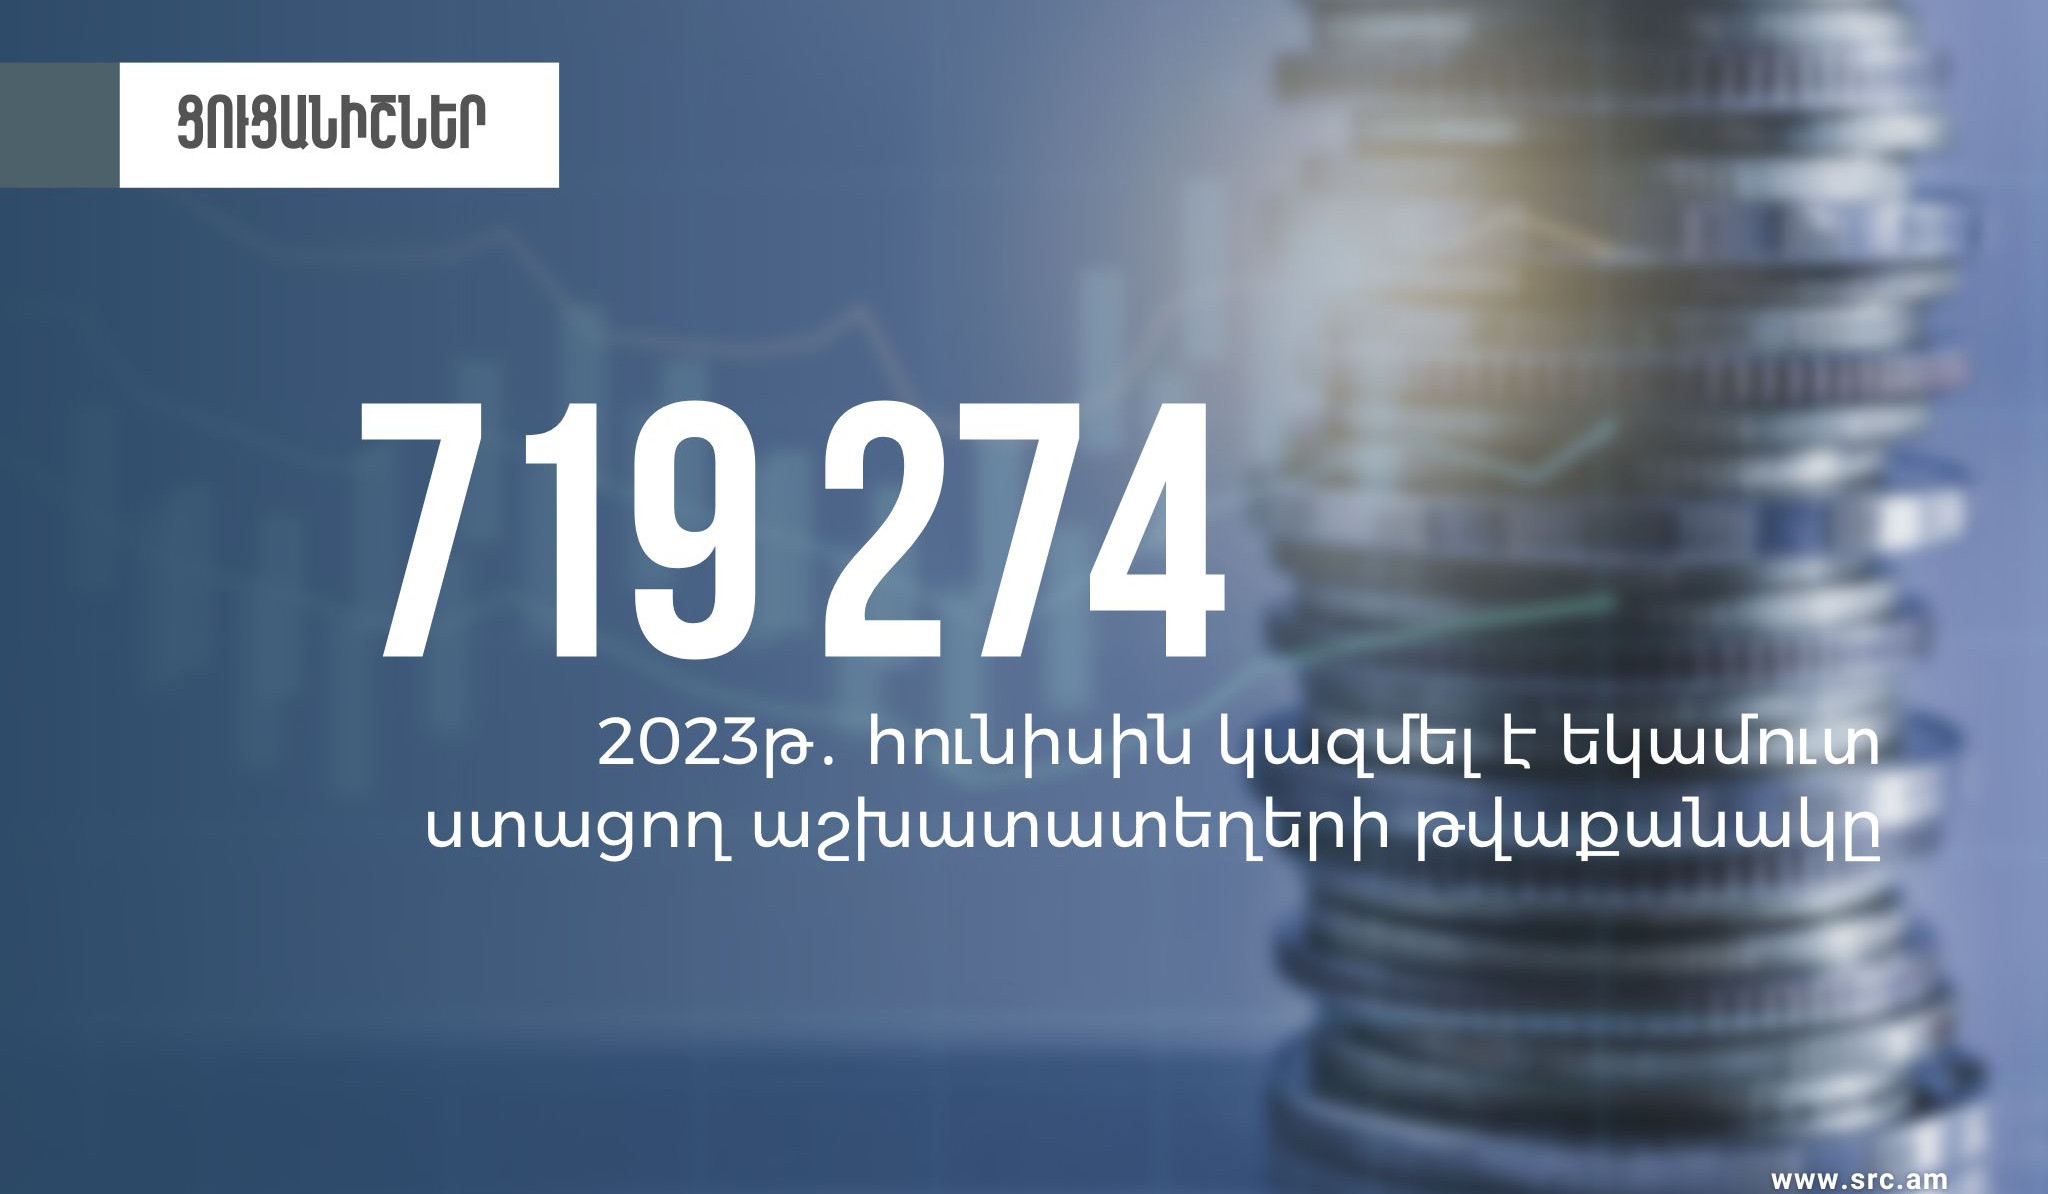 Հունիսին եկամուտ ստացող աշխատատեղերի թվաքանակը կազմել է 719274. ՊԵԿ